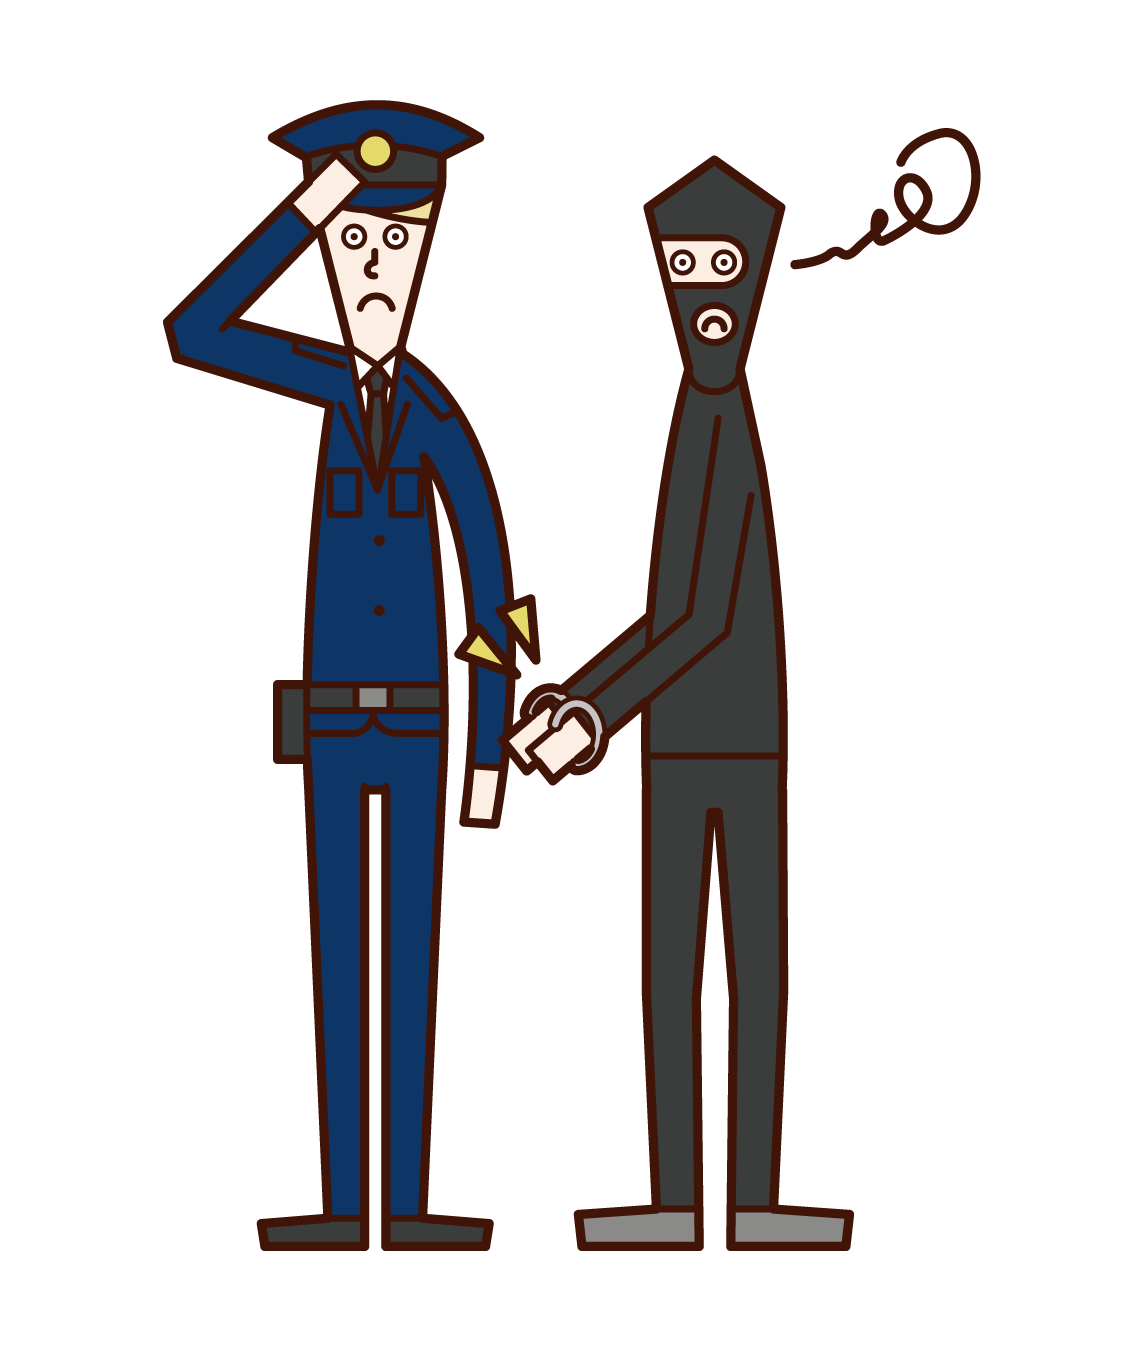 Illustration of a police officer (man) arresting the criminal